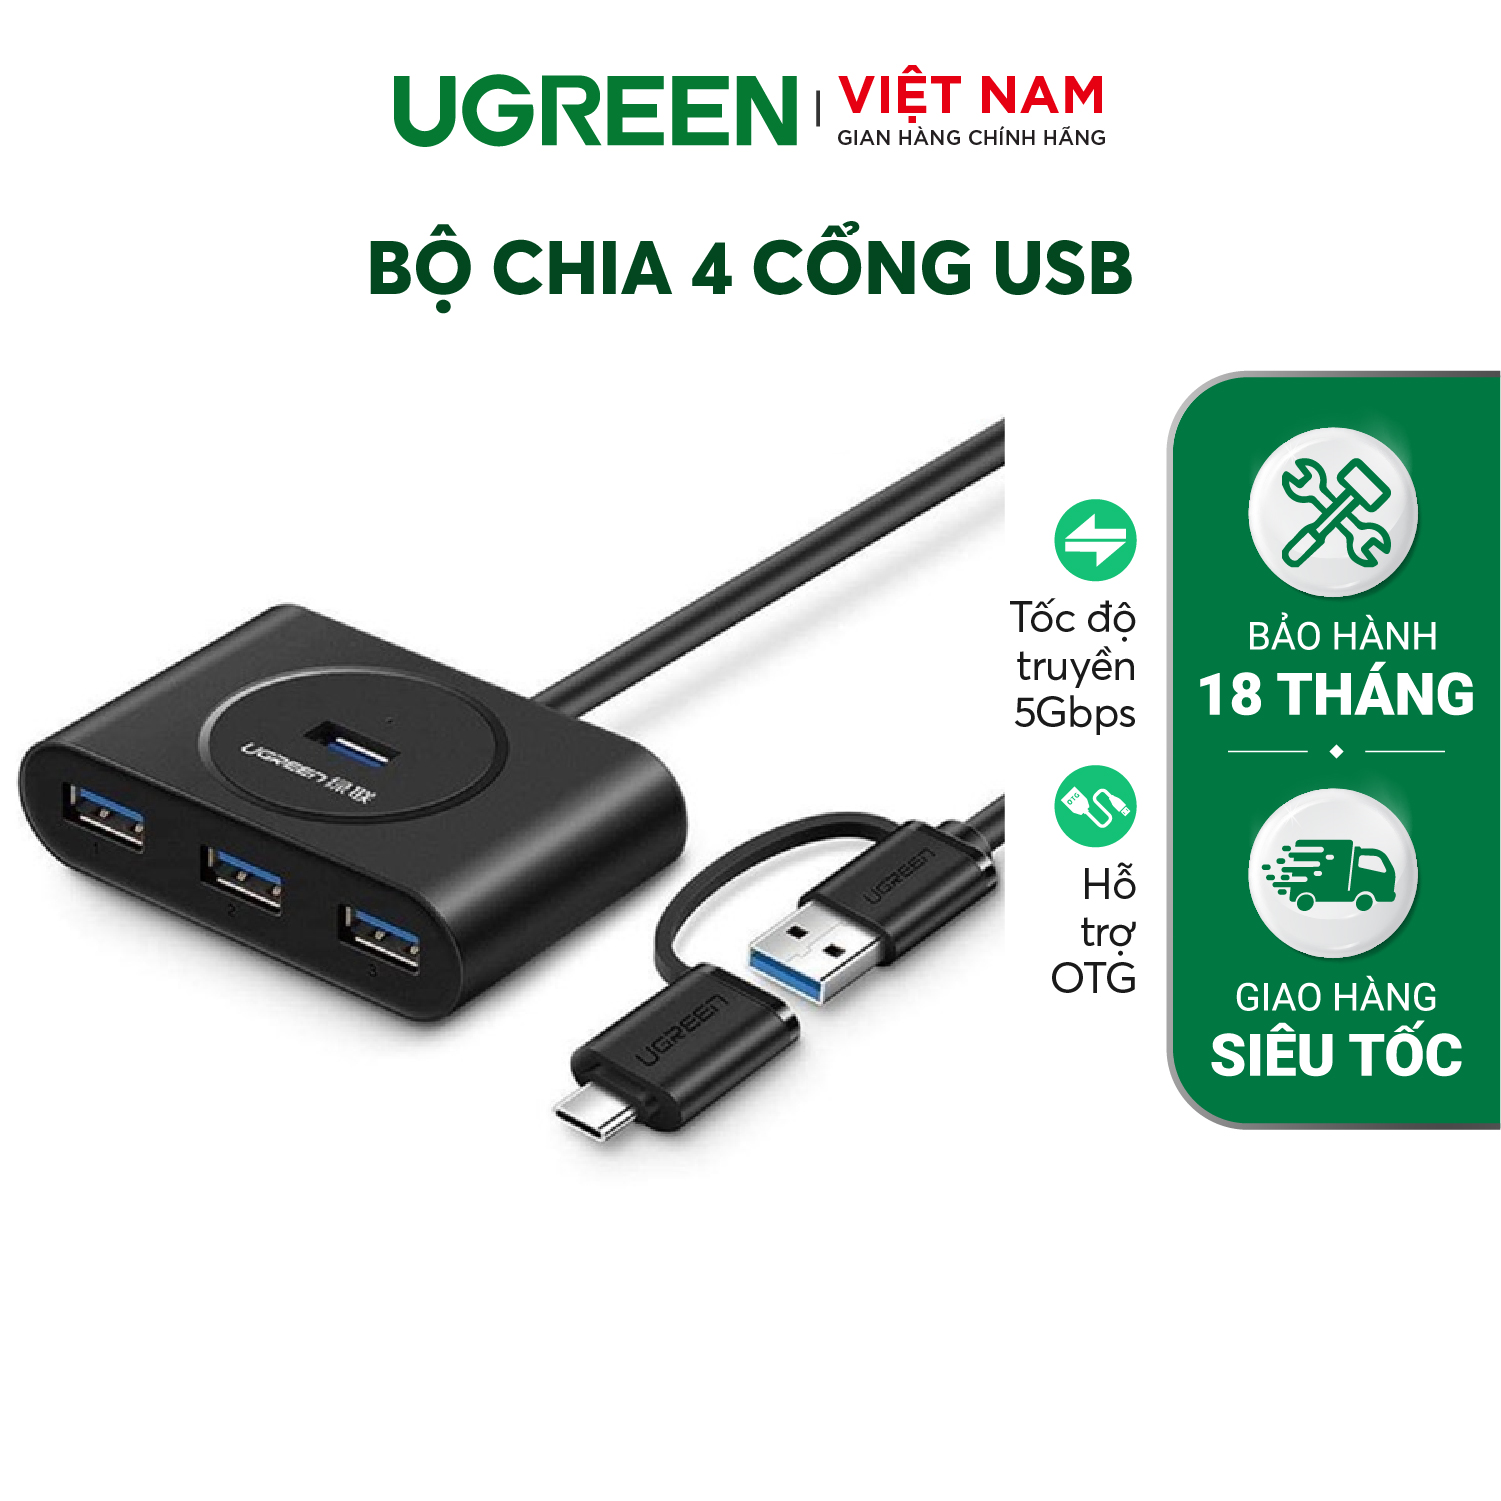 Bộ chia cổng USB 3.0/ Type C sang 4 cổng USB 3.0 UGREEN 40850 – Tốc độ truyền lên đến 5Gbps, đèn led hiển thị hoạt động – Hàng phân phối chính hãng – Bảo hành 18 tháng 1 đổi 1